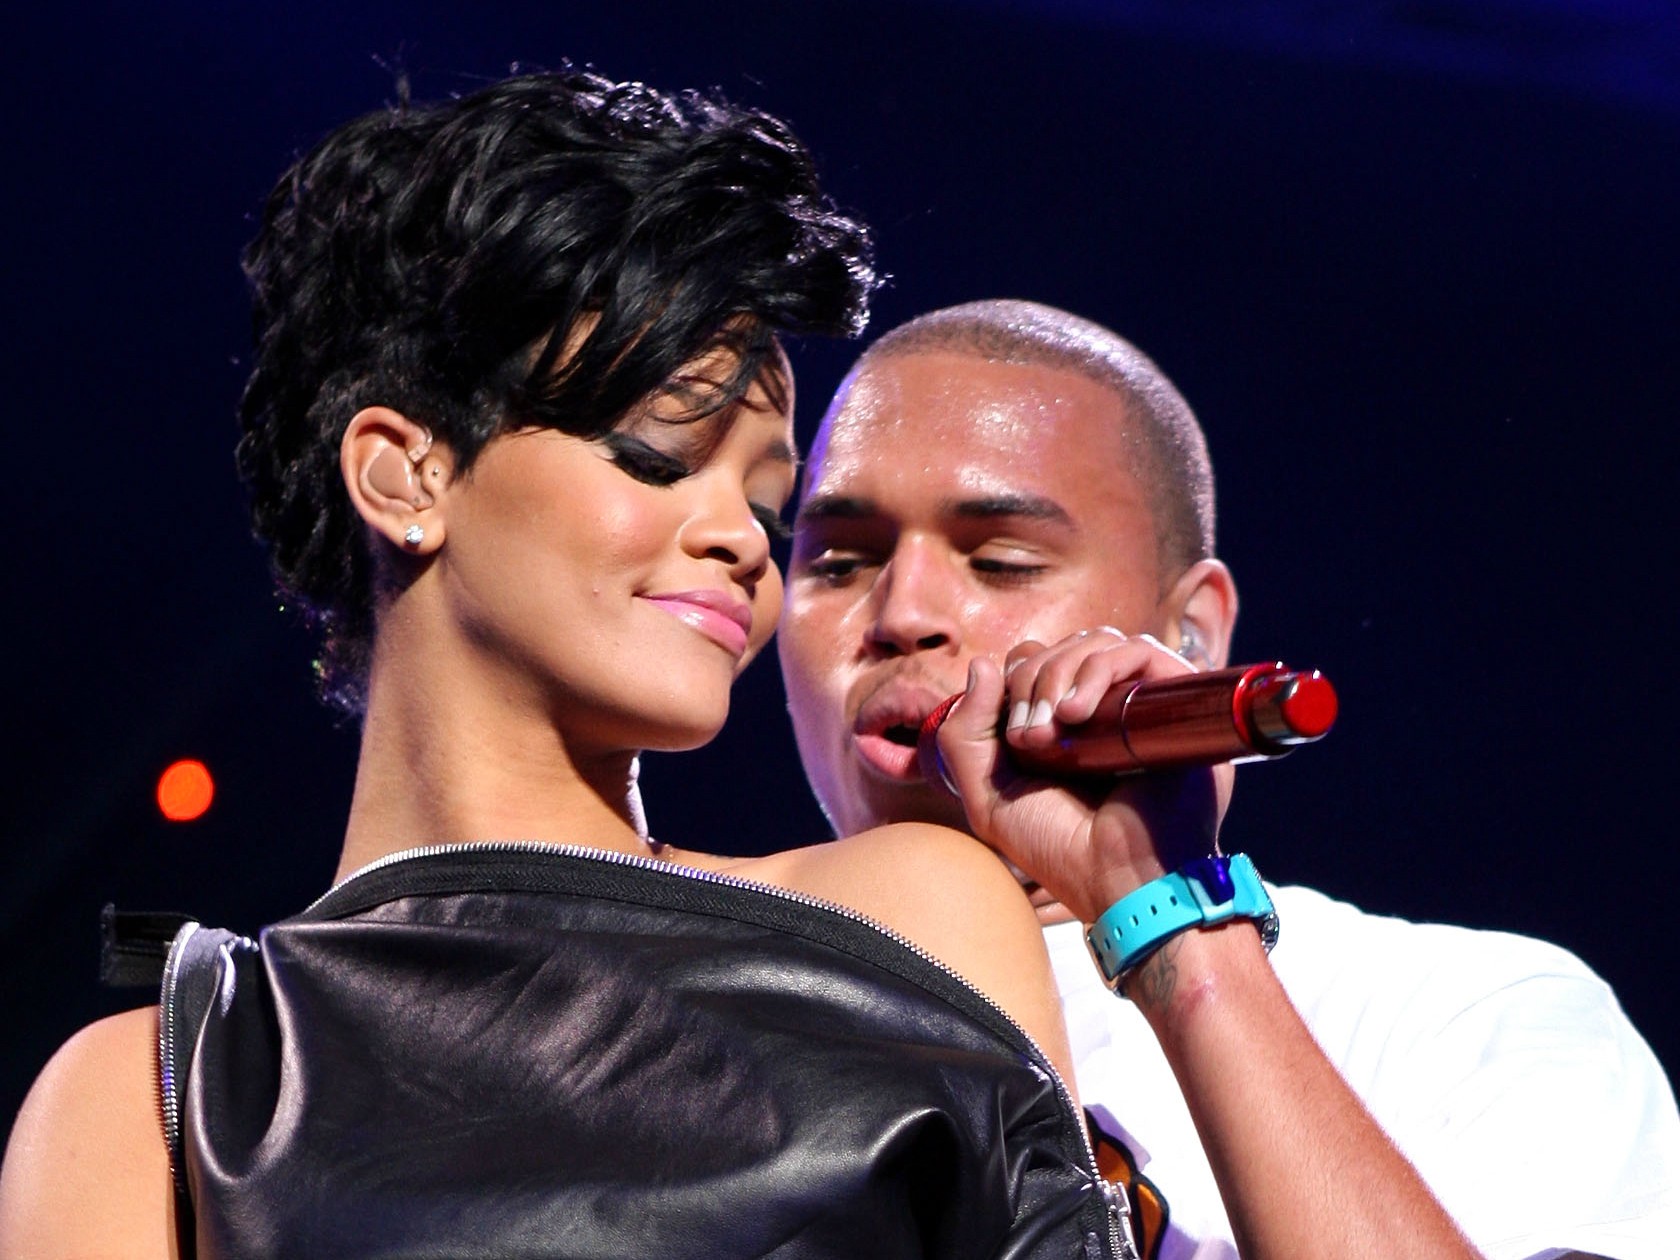 Rihanna e Chris Brown formaram um casal e tanto na década passada, até o episódio em 2009 em que o rapper espancou a cantora. Ele pediu desculpas publicamente diversas vezes, respondeu por seus atos à Justiça dos EUA, e chegou a recomeçar o romance com Rihanna no fim de 2012, mas durou só alguns meses. (Foto: Getty Images)